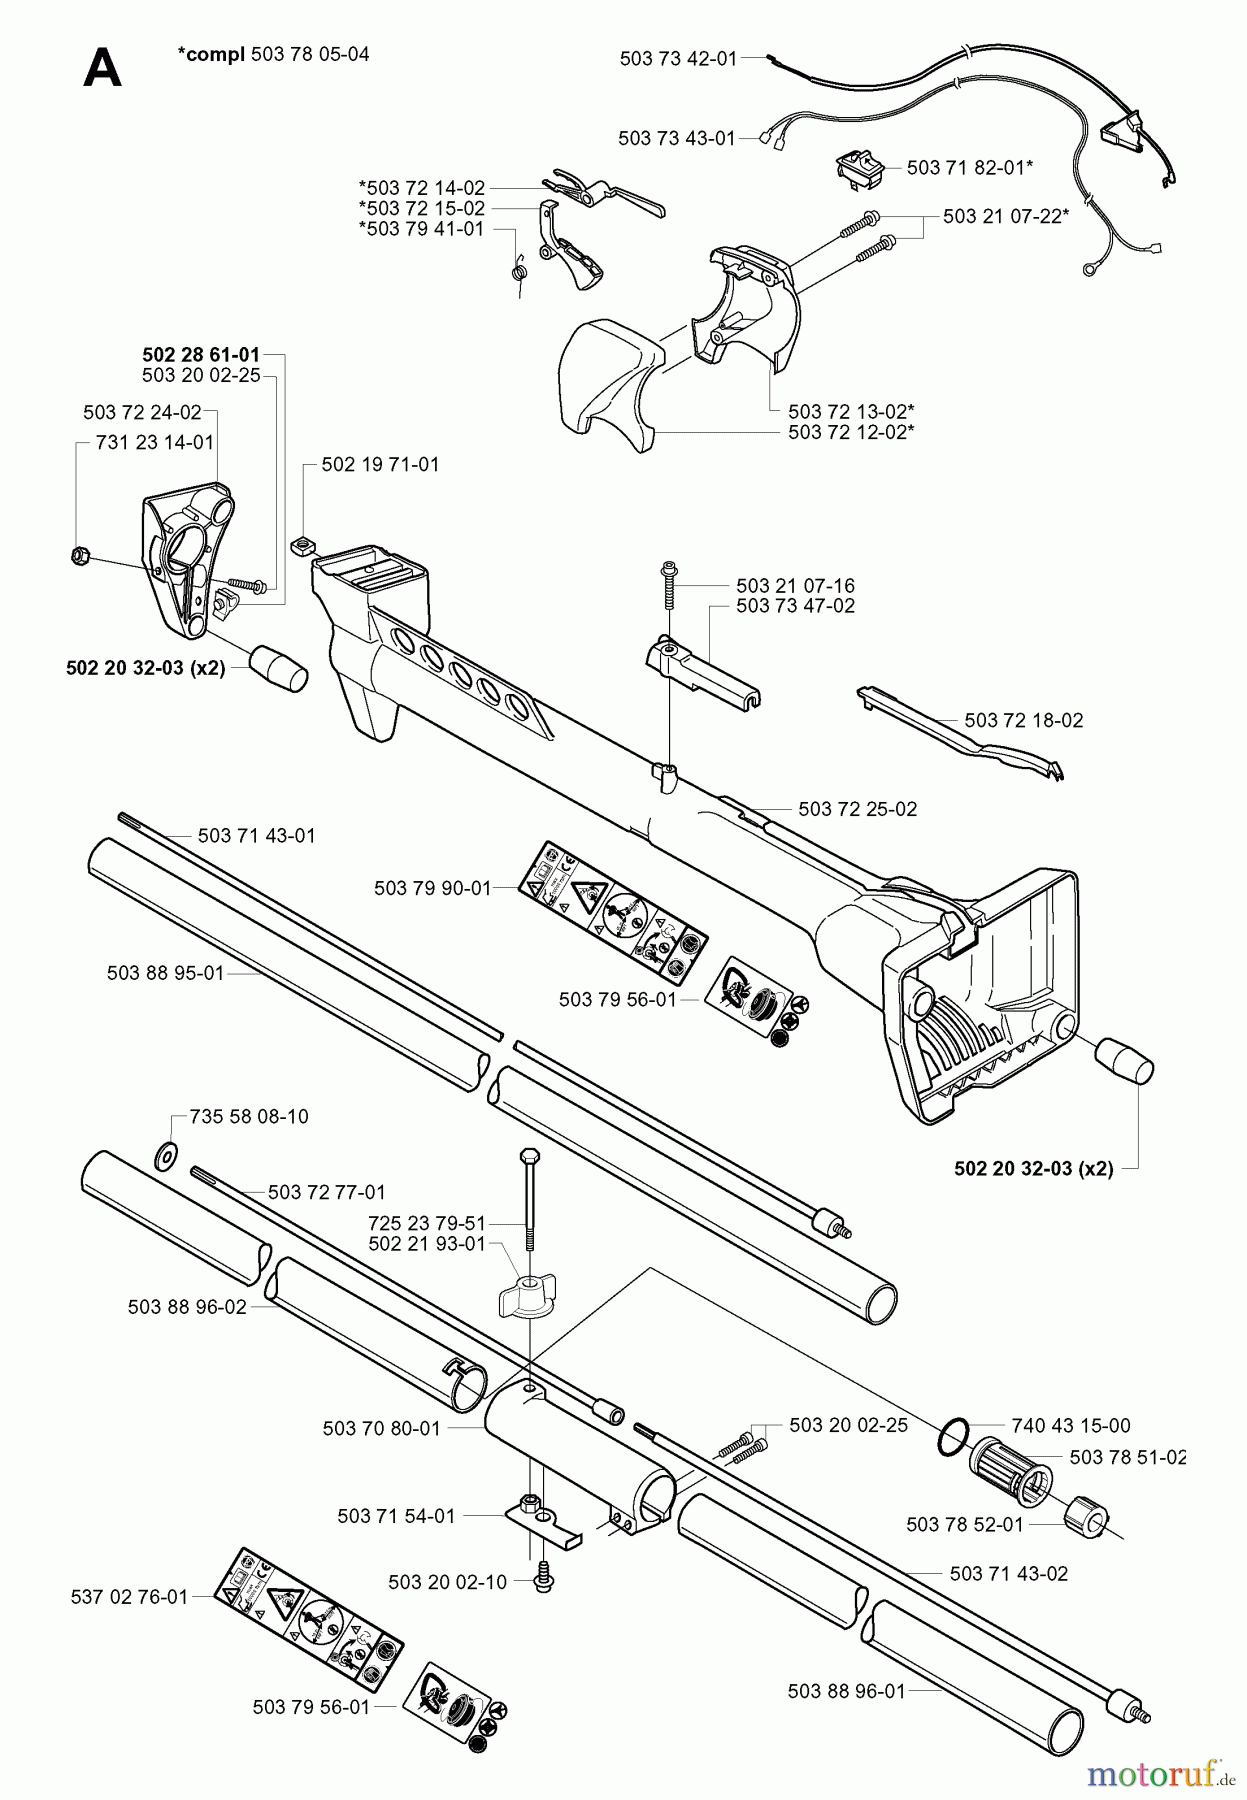  Jonsered Motorsensen, Trimmer GR2026 - Jonsered String/Brush Trimmer (2000-10) SHAFT HANDLE